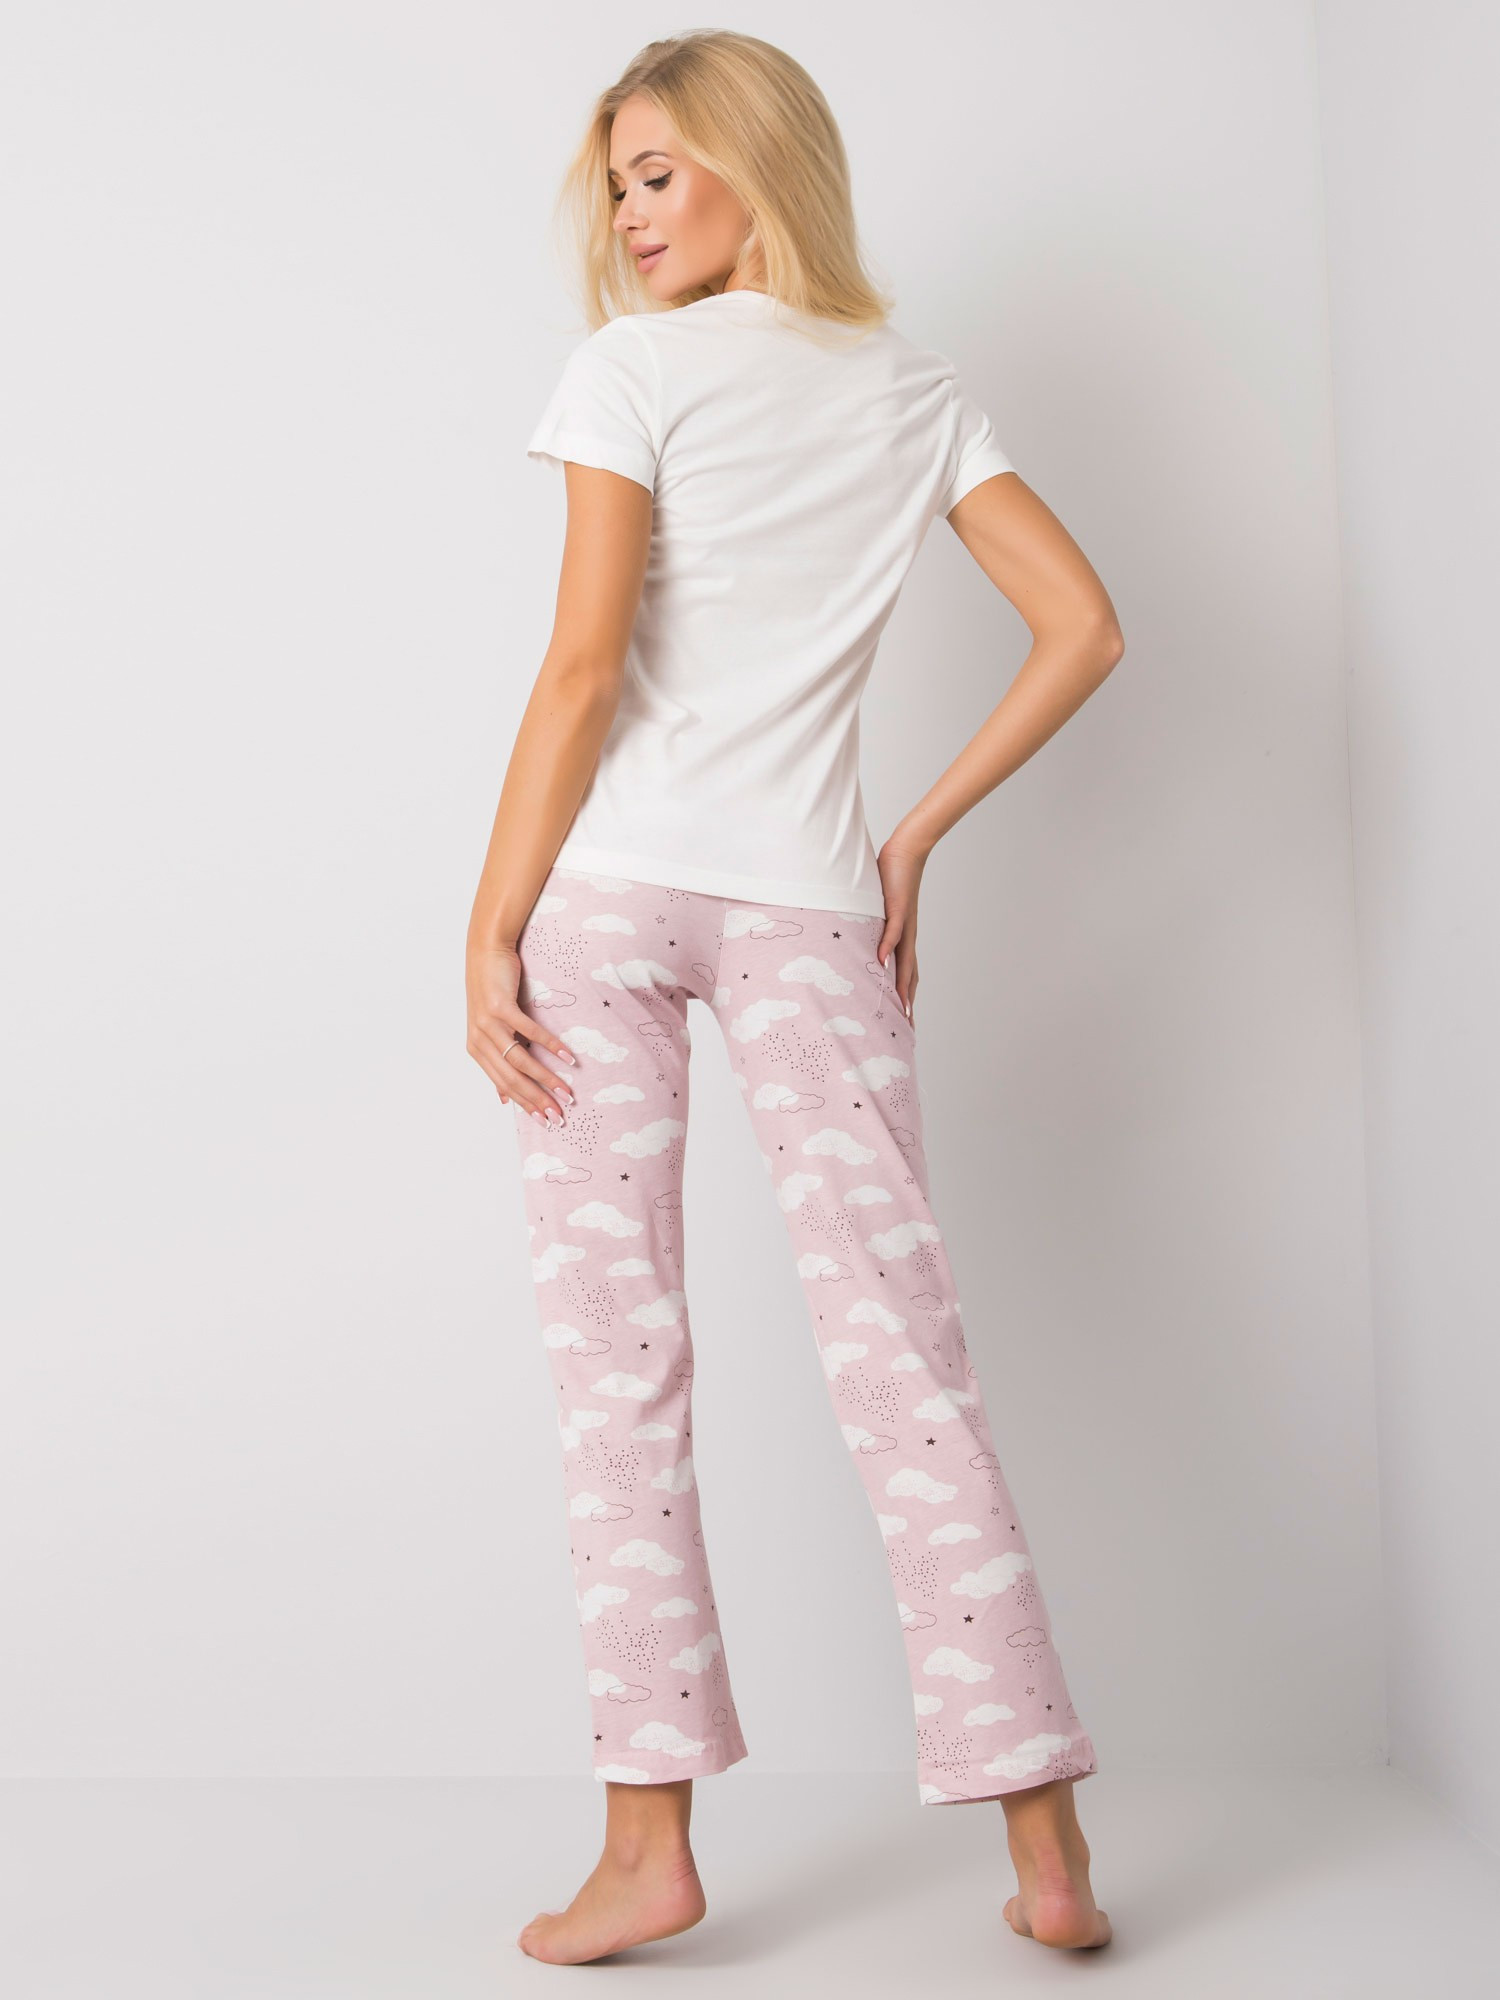 Pyžamo BR PI 3256 bílé a růžové XL